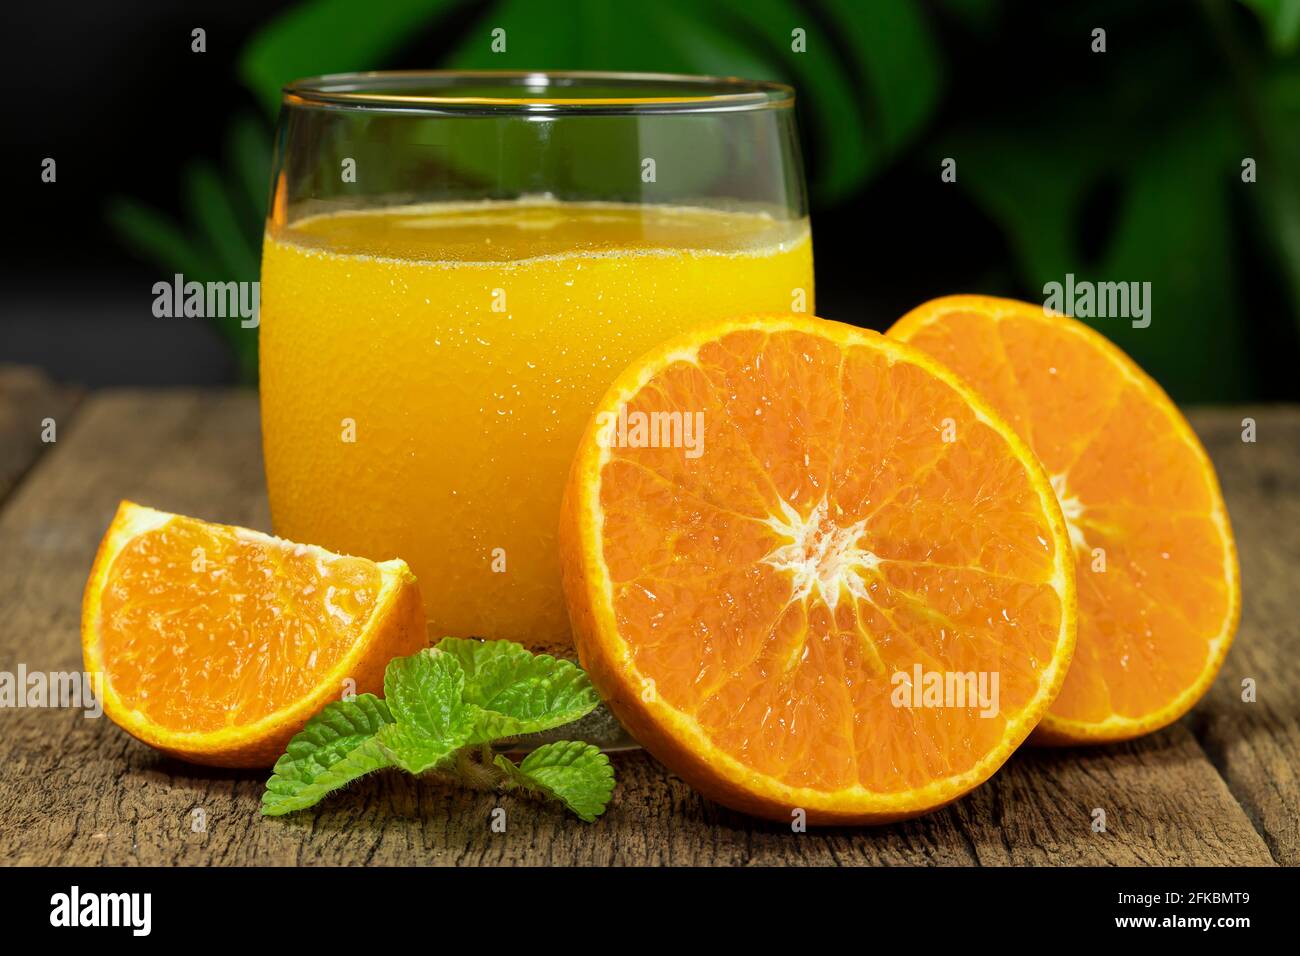 Un vaso de zumo de naranja y fruta de naranja cortado a la mitad en la mesa de madera. Foto de stock